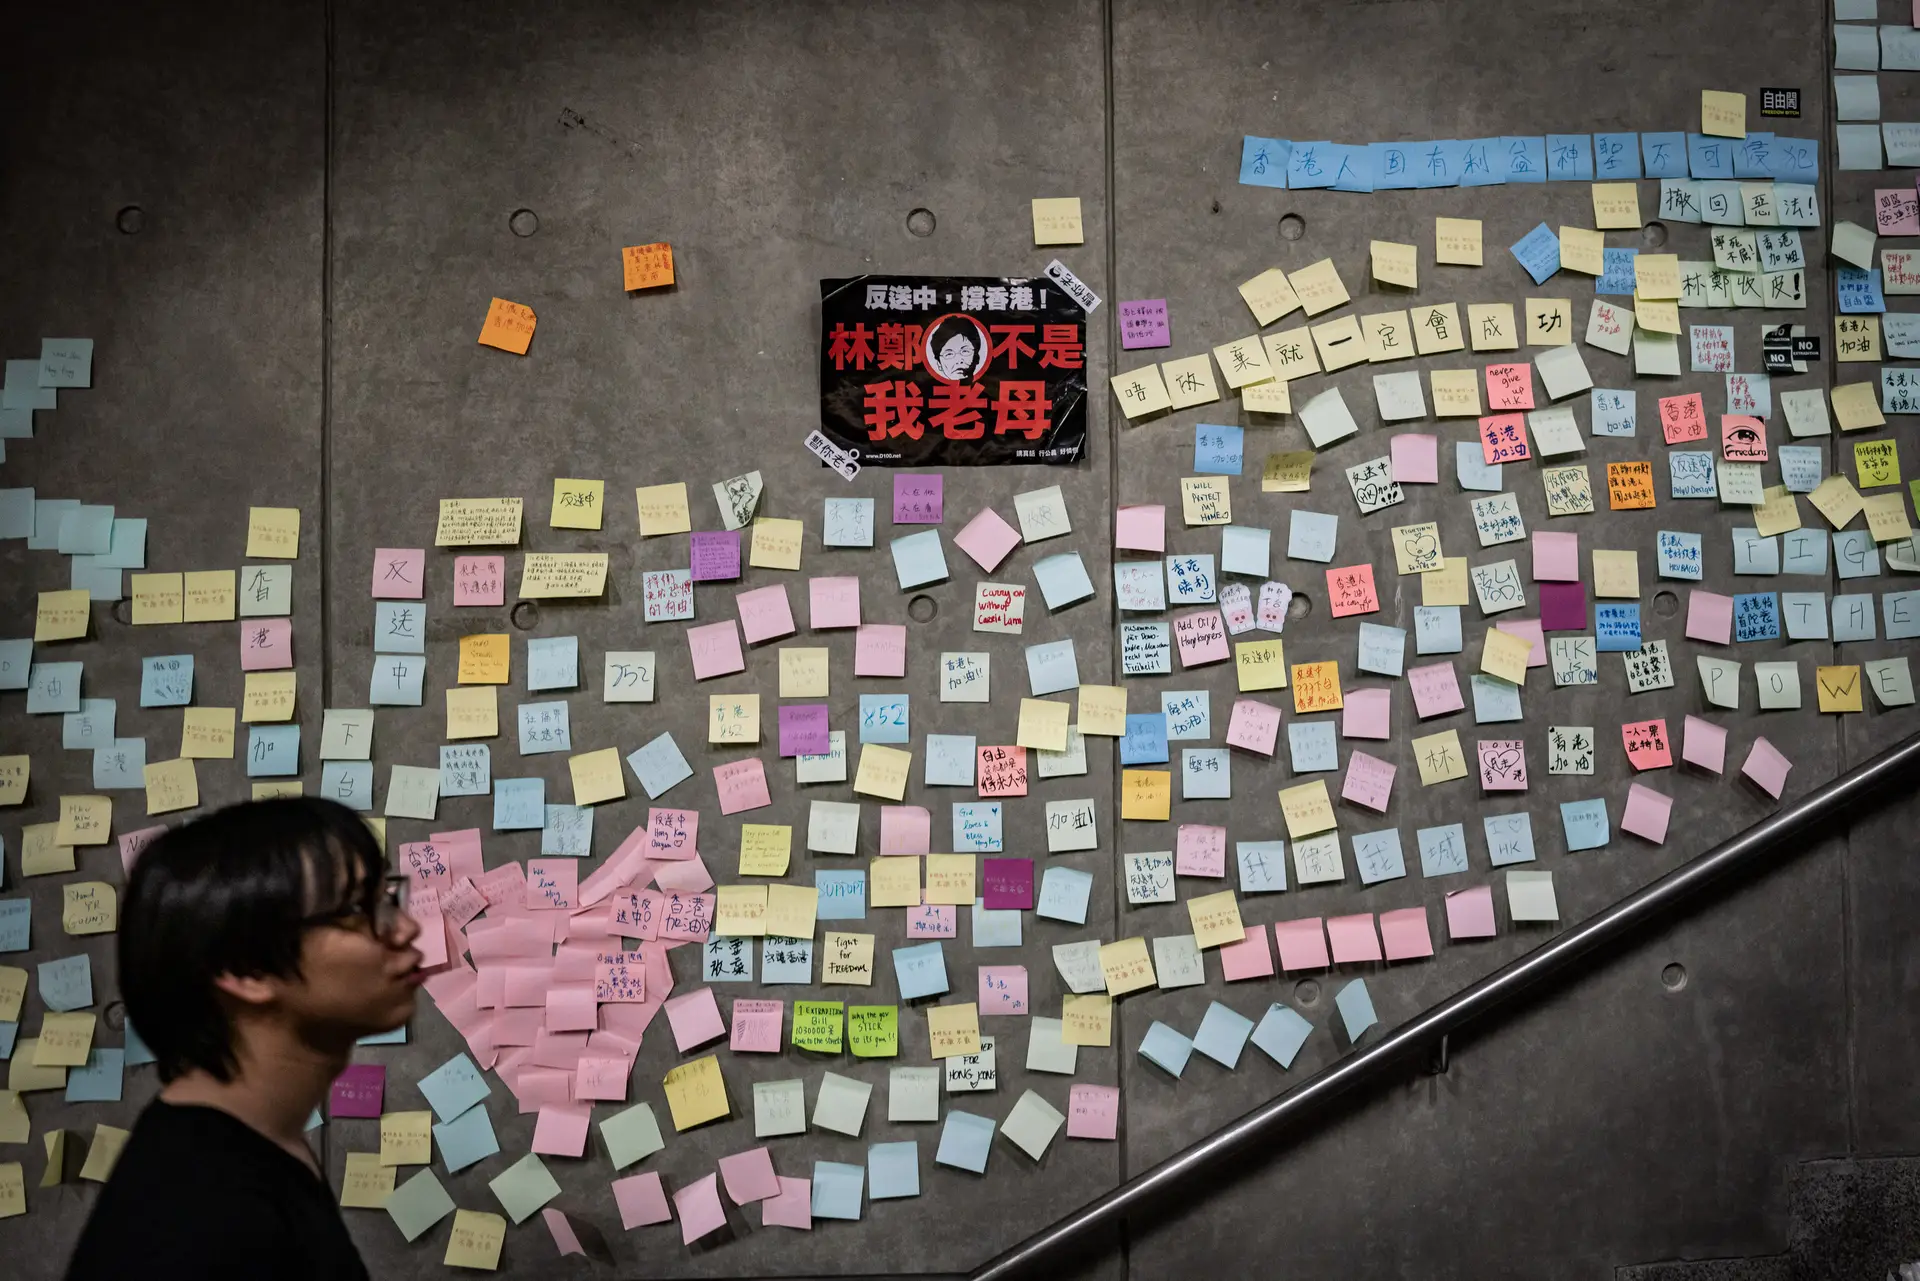 Uma presença colorida a que os cidadãos de Hong Kong se vão habituando nas suas rotinas quotidianas